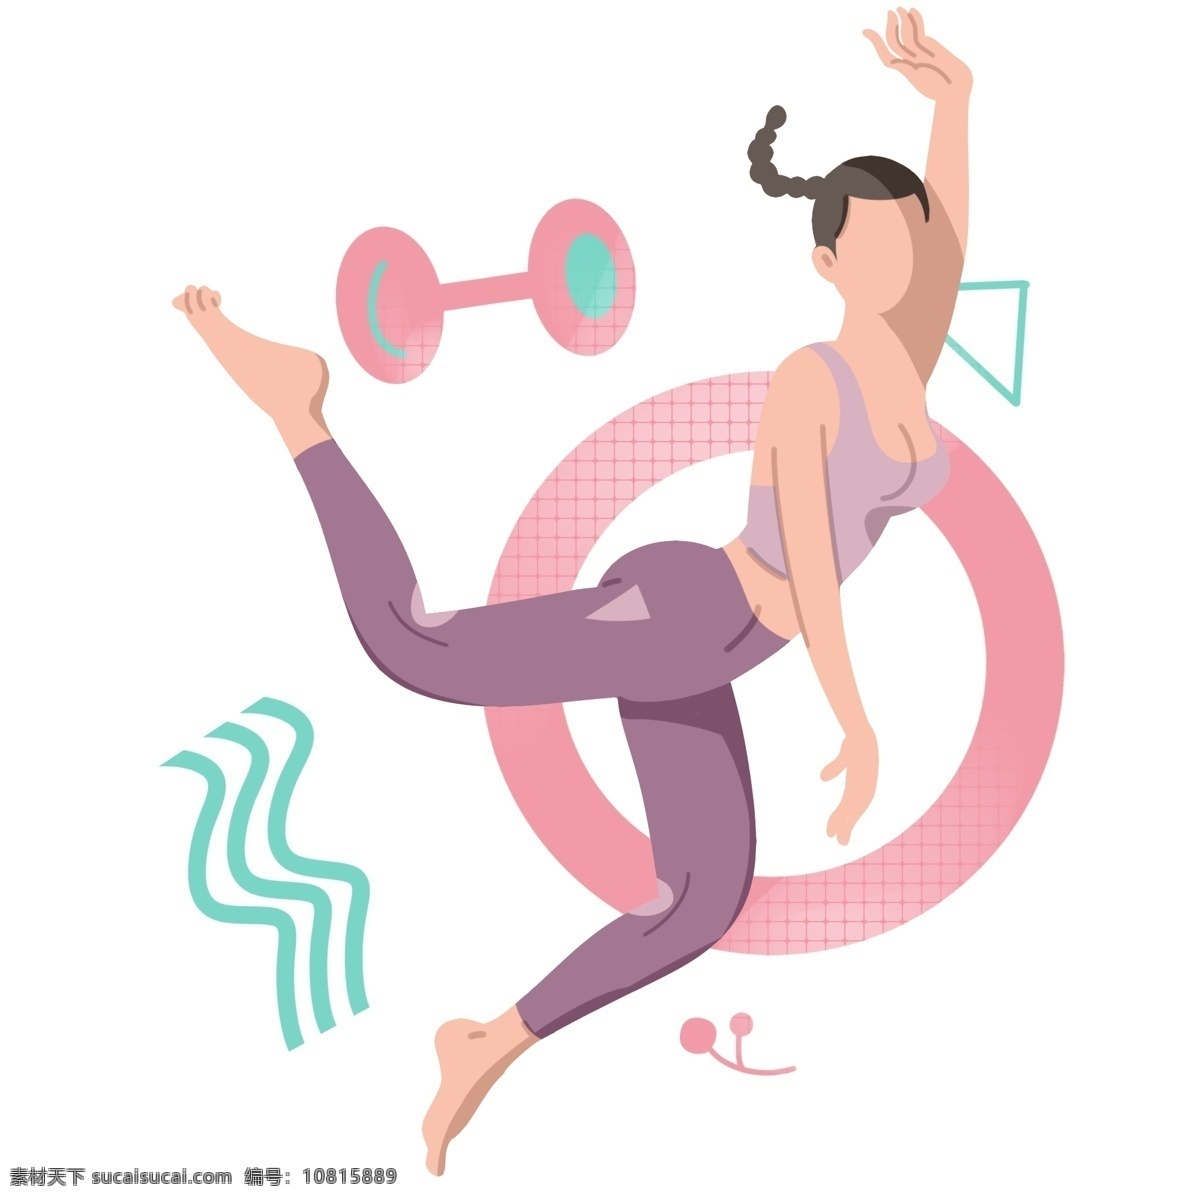 健身 运动 卡通 插画 卡通的插画 健身运动 活动筋骨 体育项目 强身健体 加强锻炼 跳跃的舞蹈